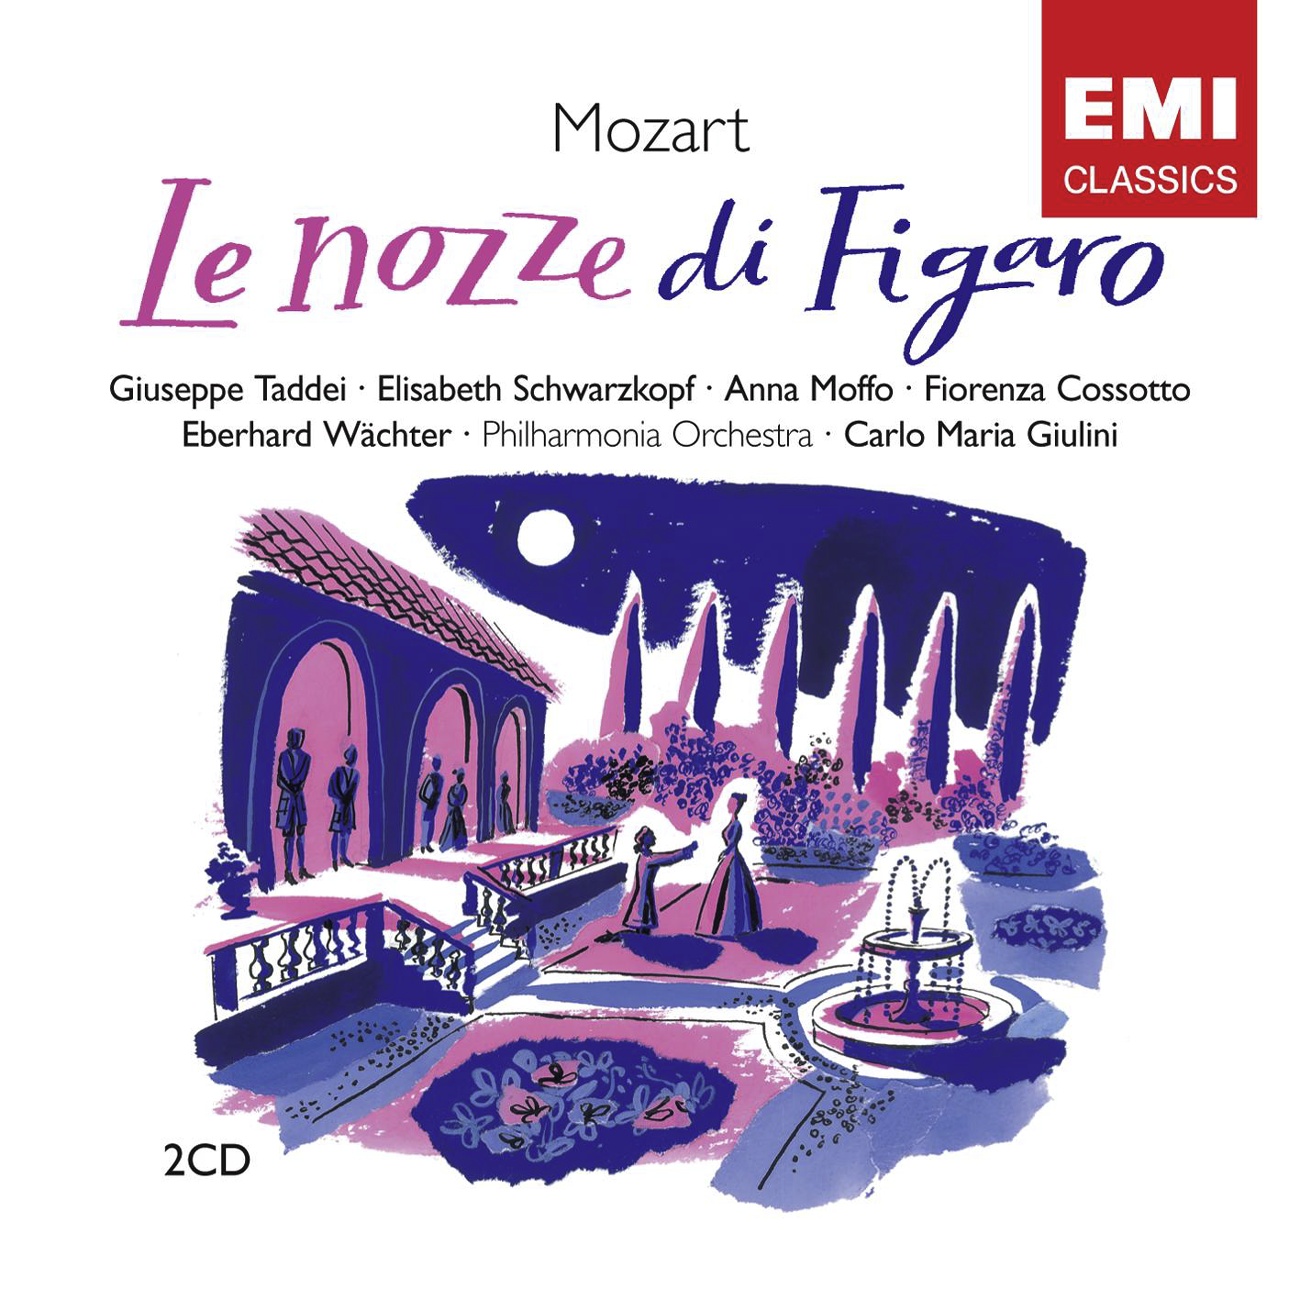 Le nozze di Figaro K492 (1989 Digital Remaster), Atto Quarto: Recitativo:  Giunse alfin il momento ... Aria:  Deh vieni, non tardar (Susanna)